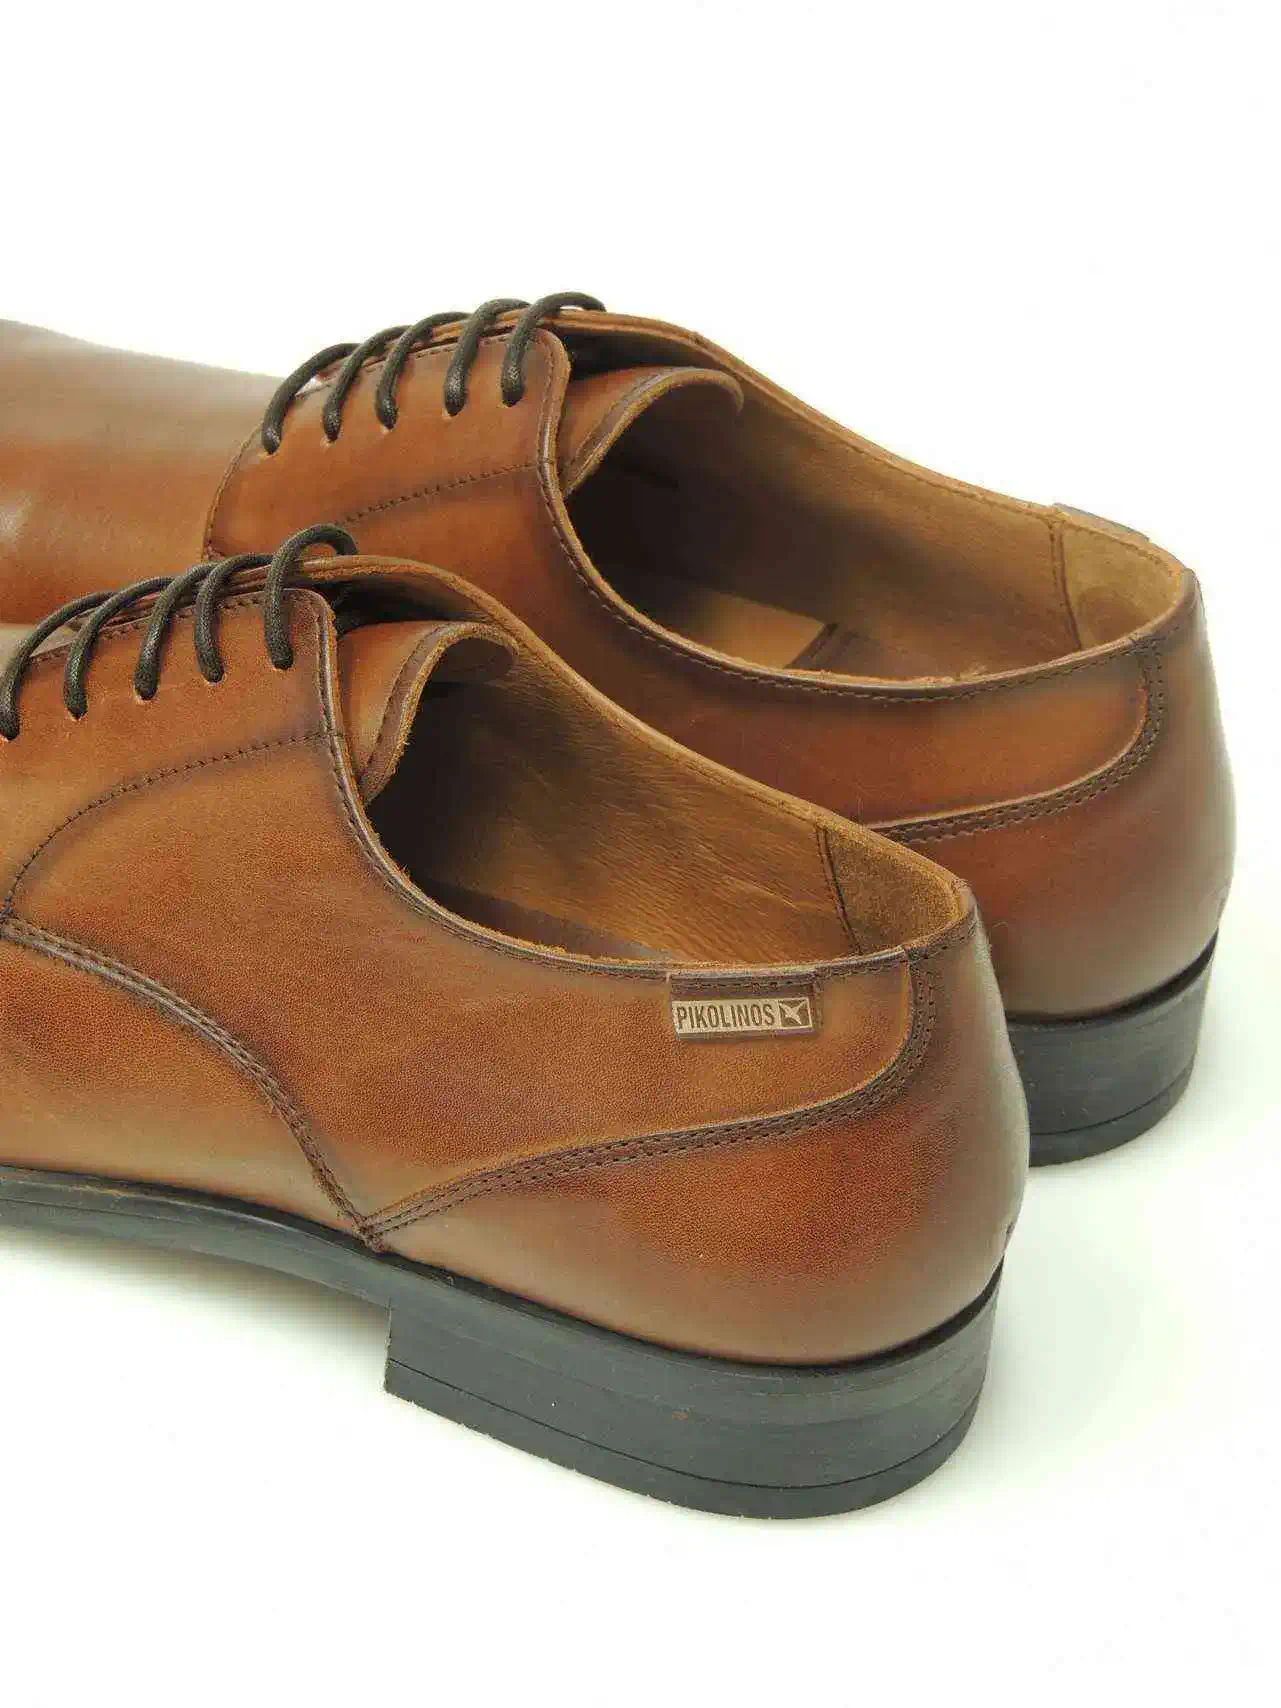 zapatos-blucher-pikolinos-m7j-4187-piel-cuero